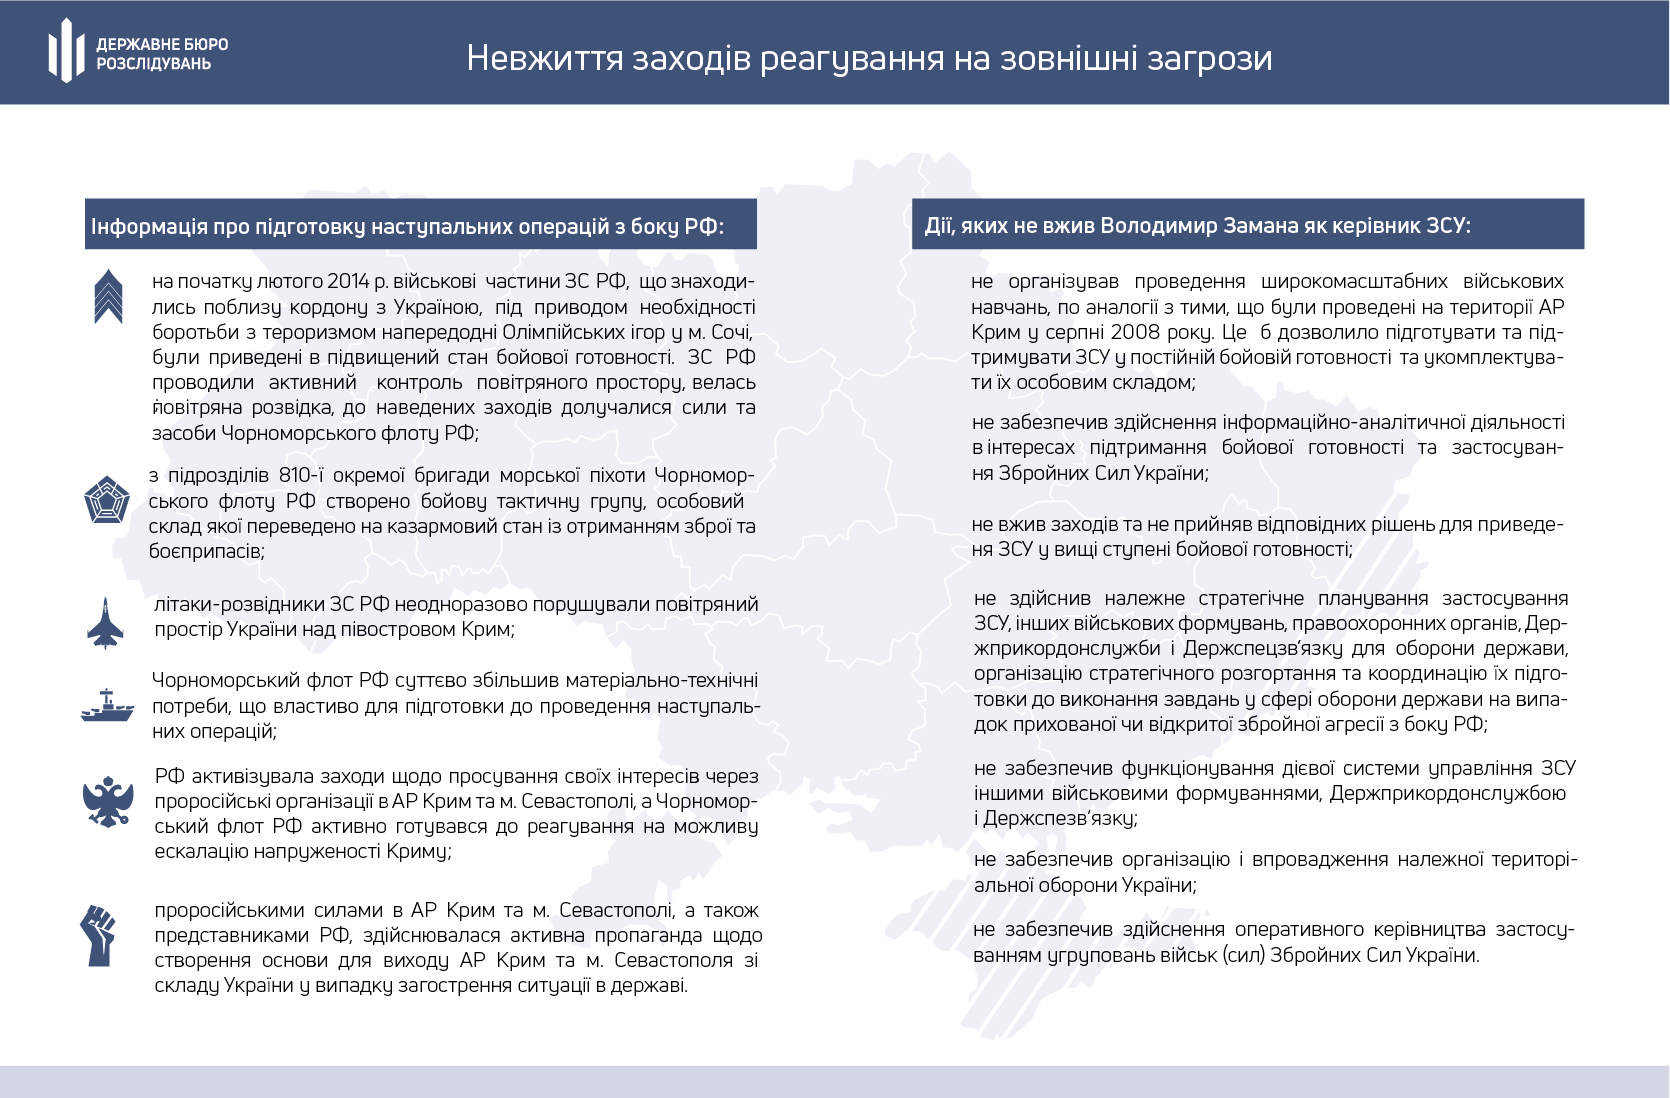 ГБР назвало причины оккупации Россией Крыма и части Донбасса – инфографика и видео